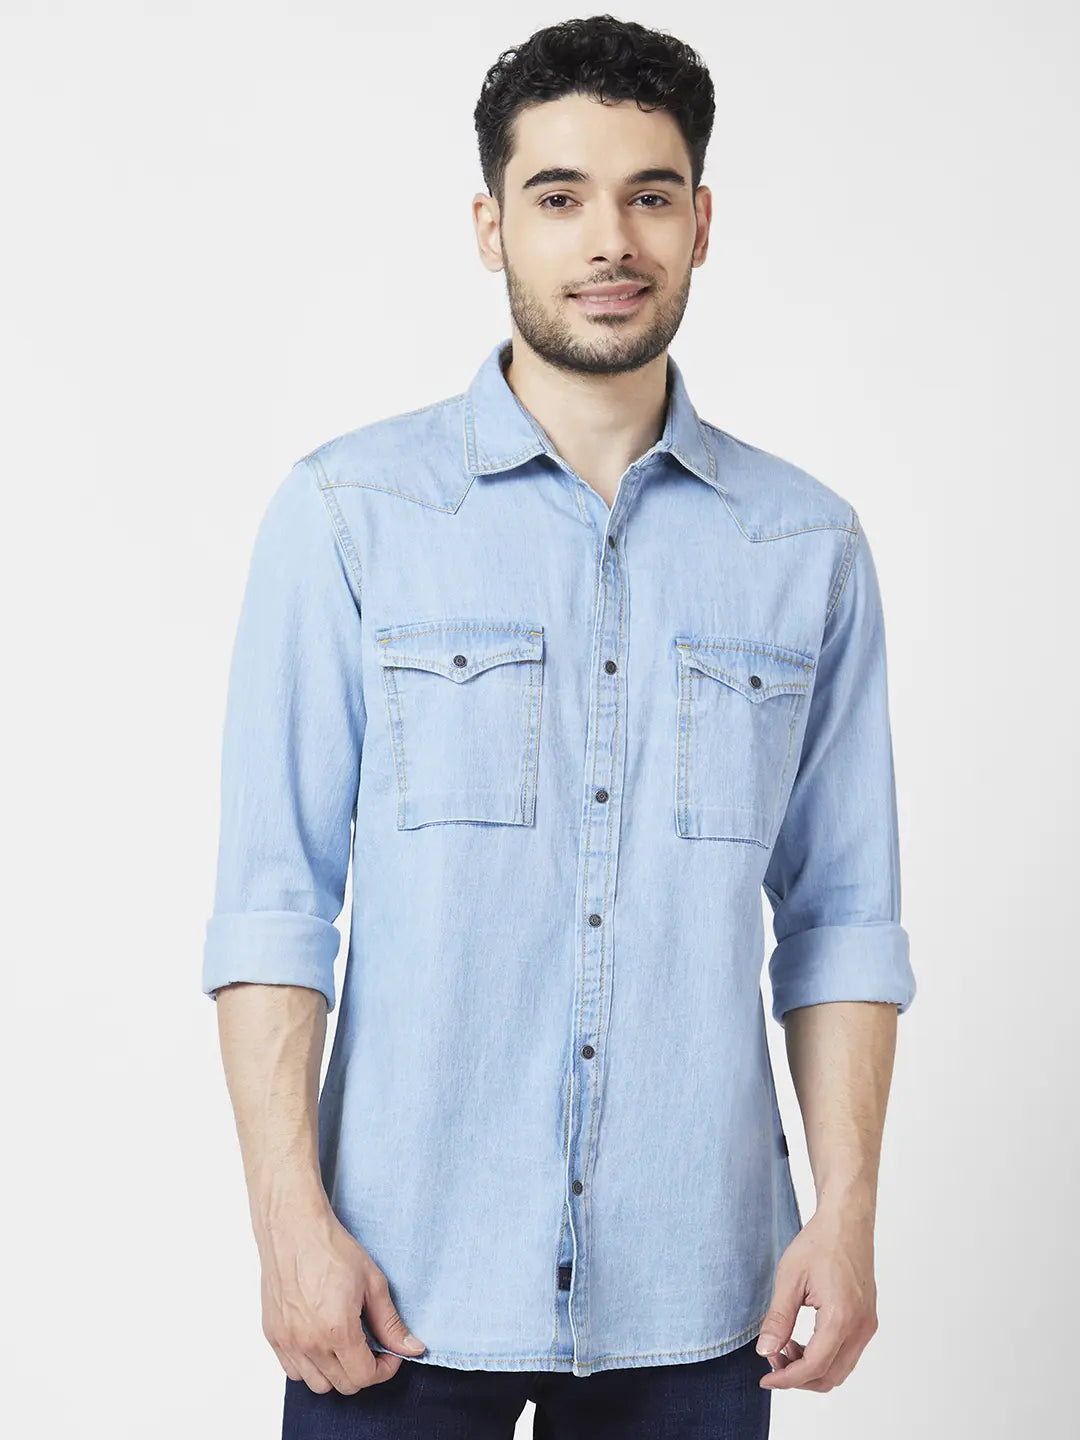 Men's Denim Shirts | Gap